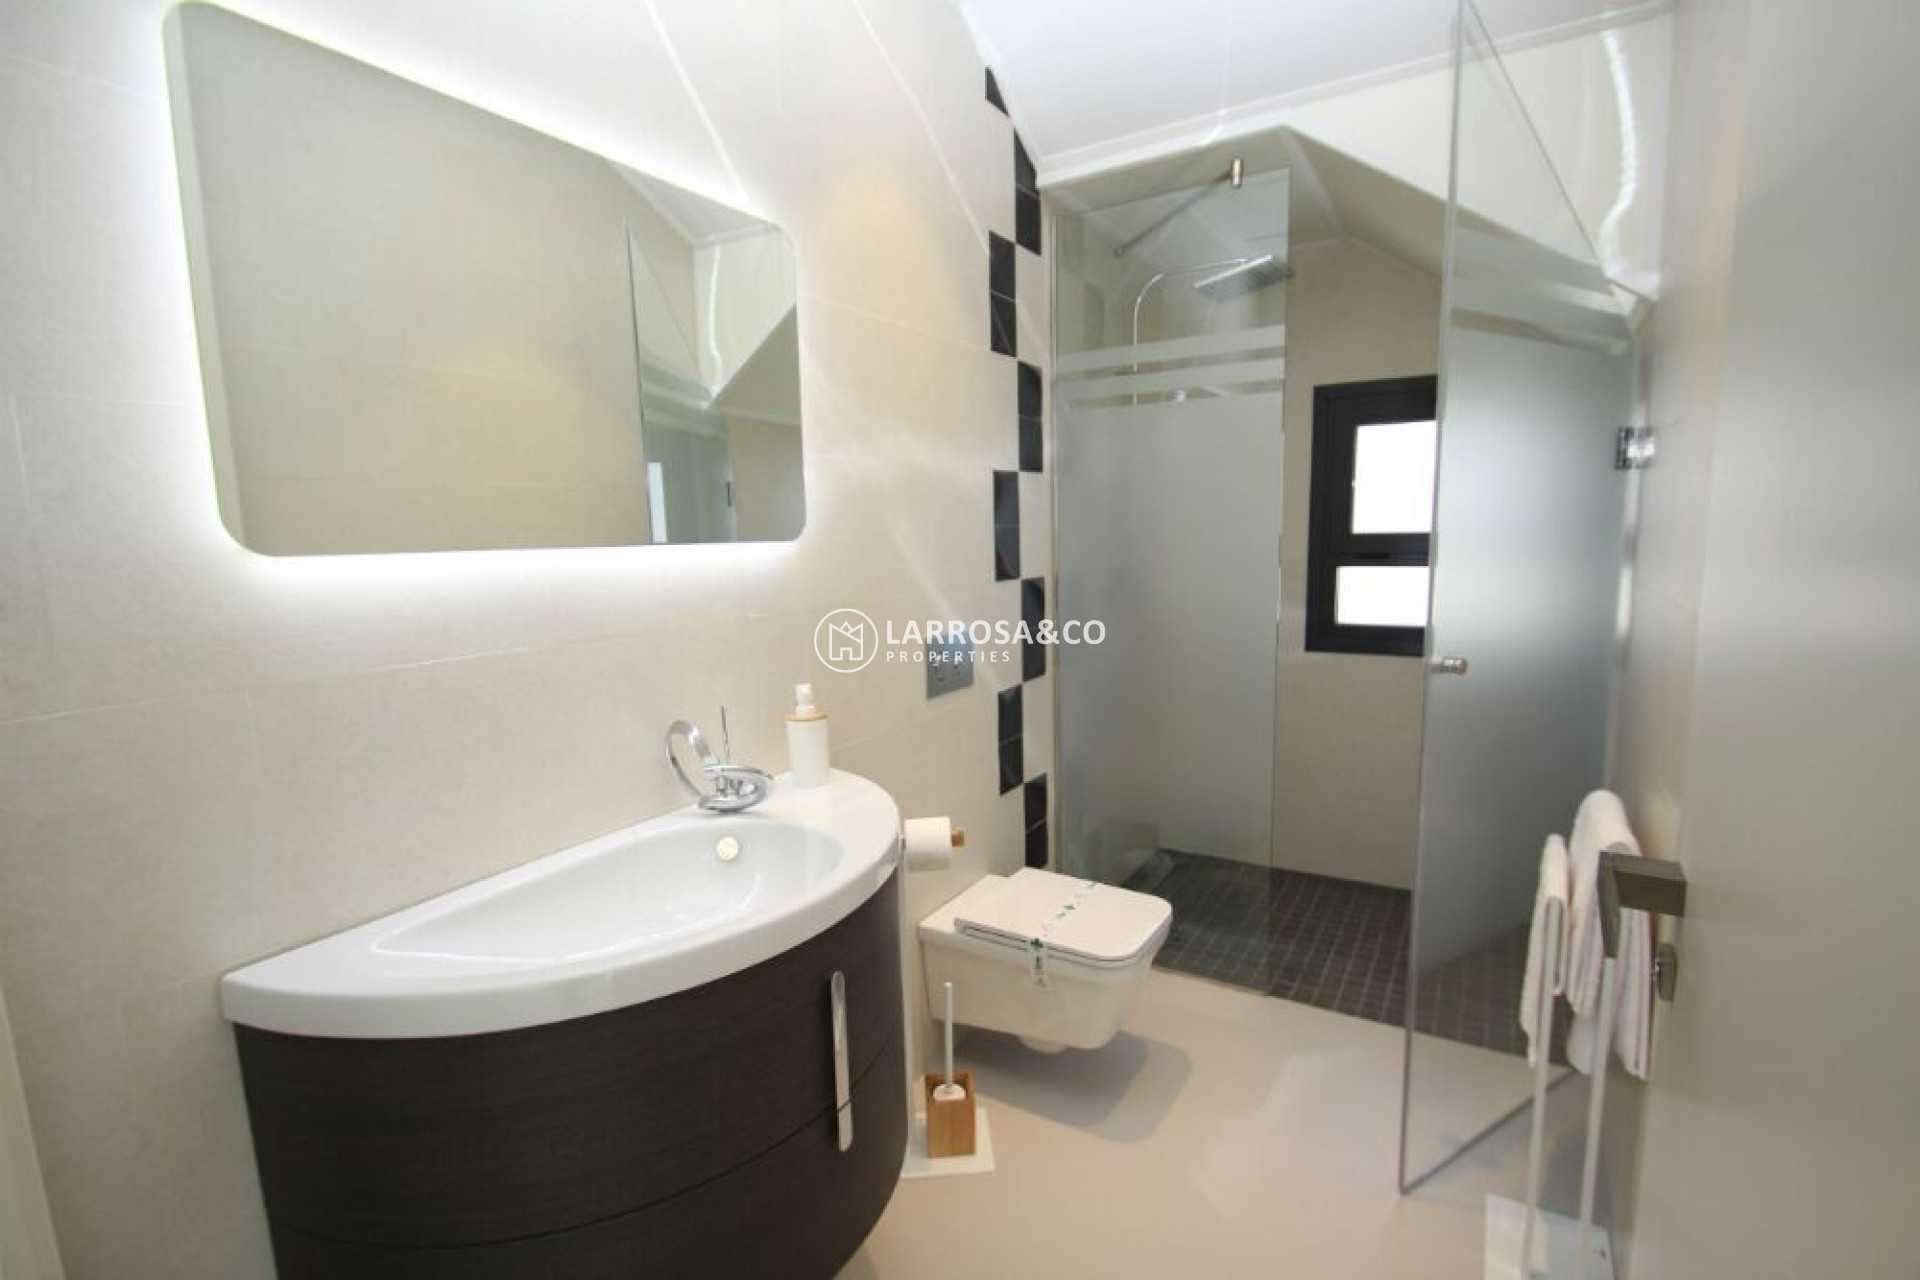 new-build-villa-sanmiguel-bathroom3-on2119